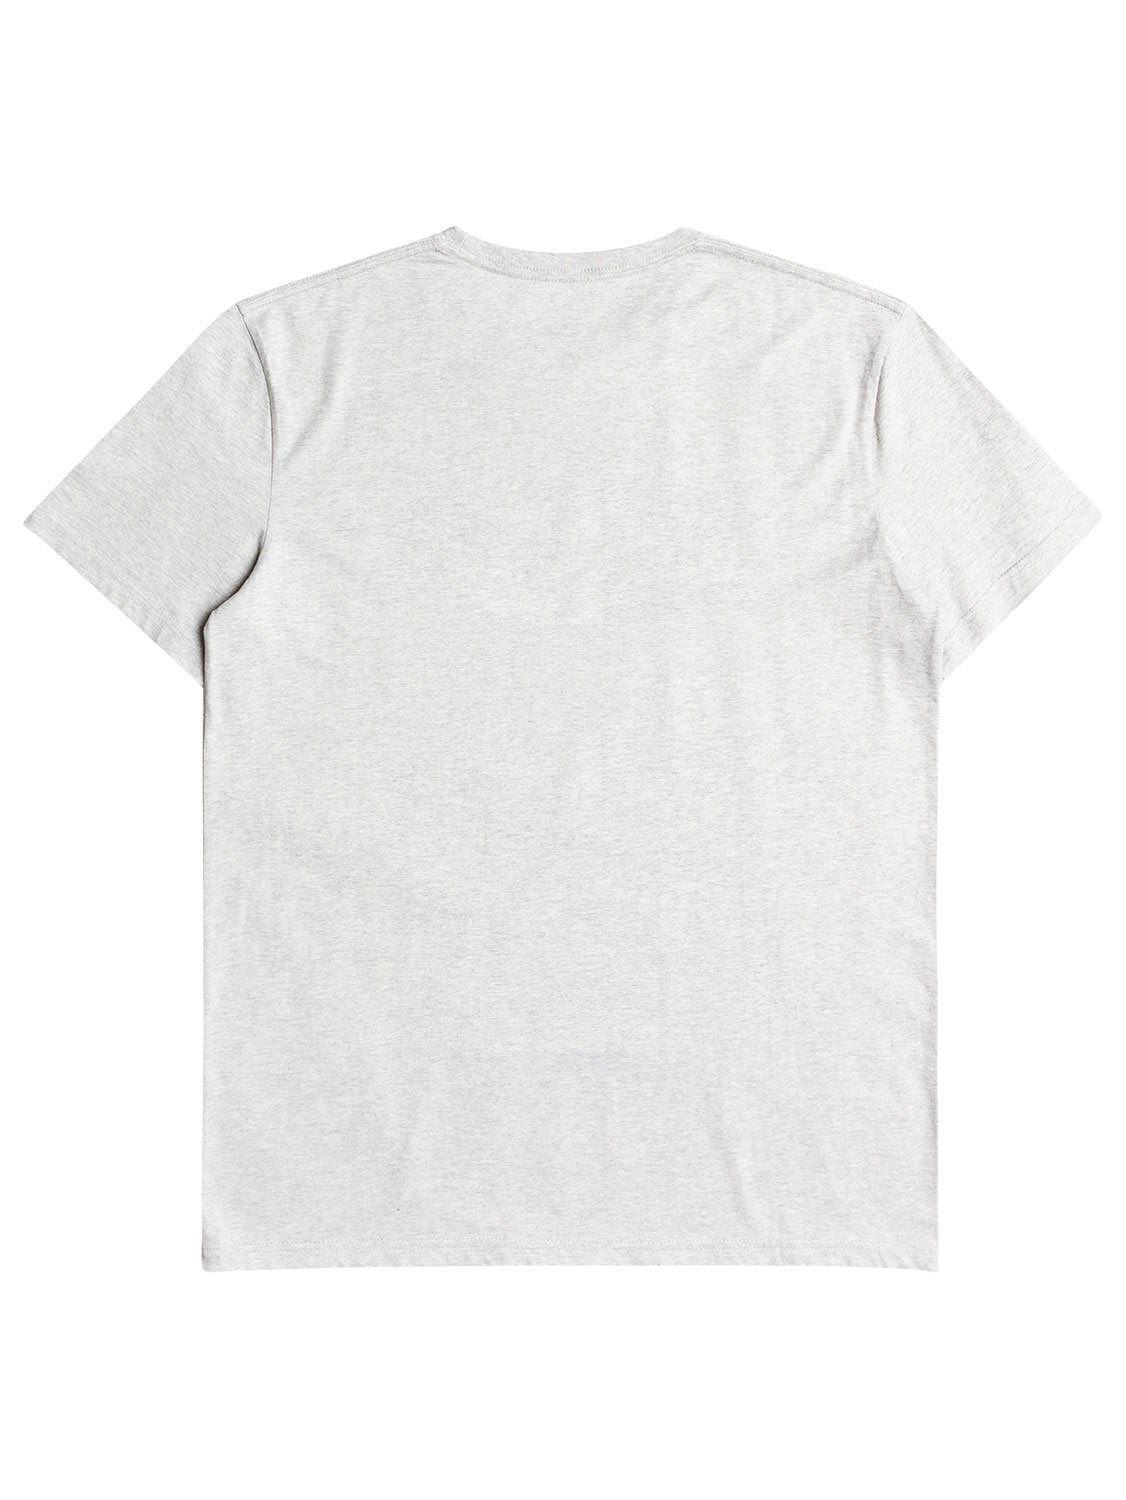 Billabong Men's Team Wave T-Shirt